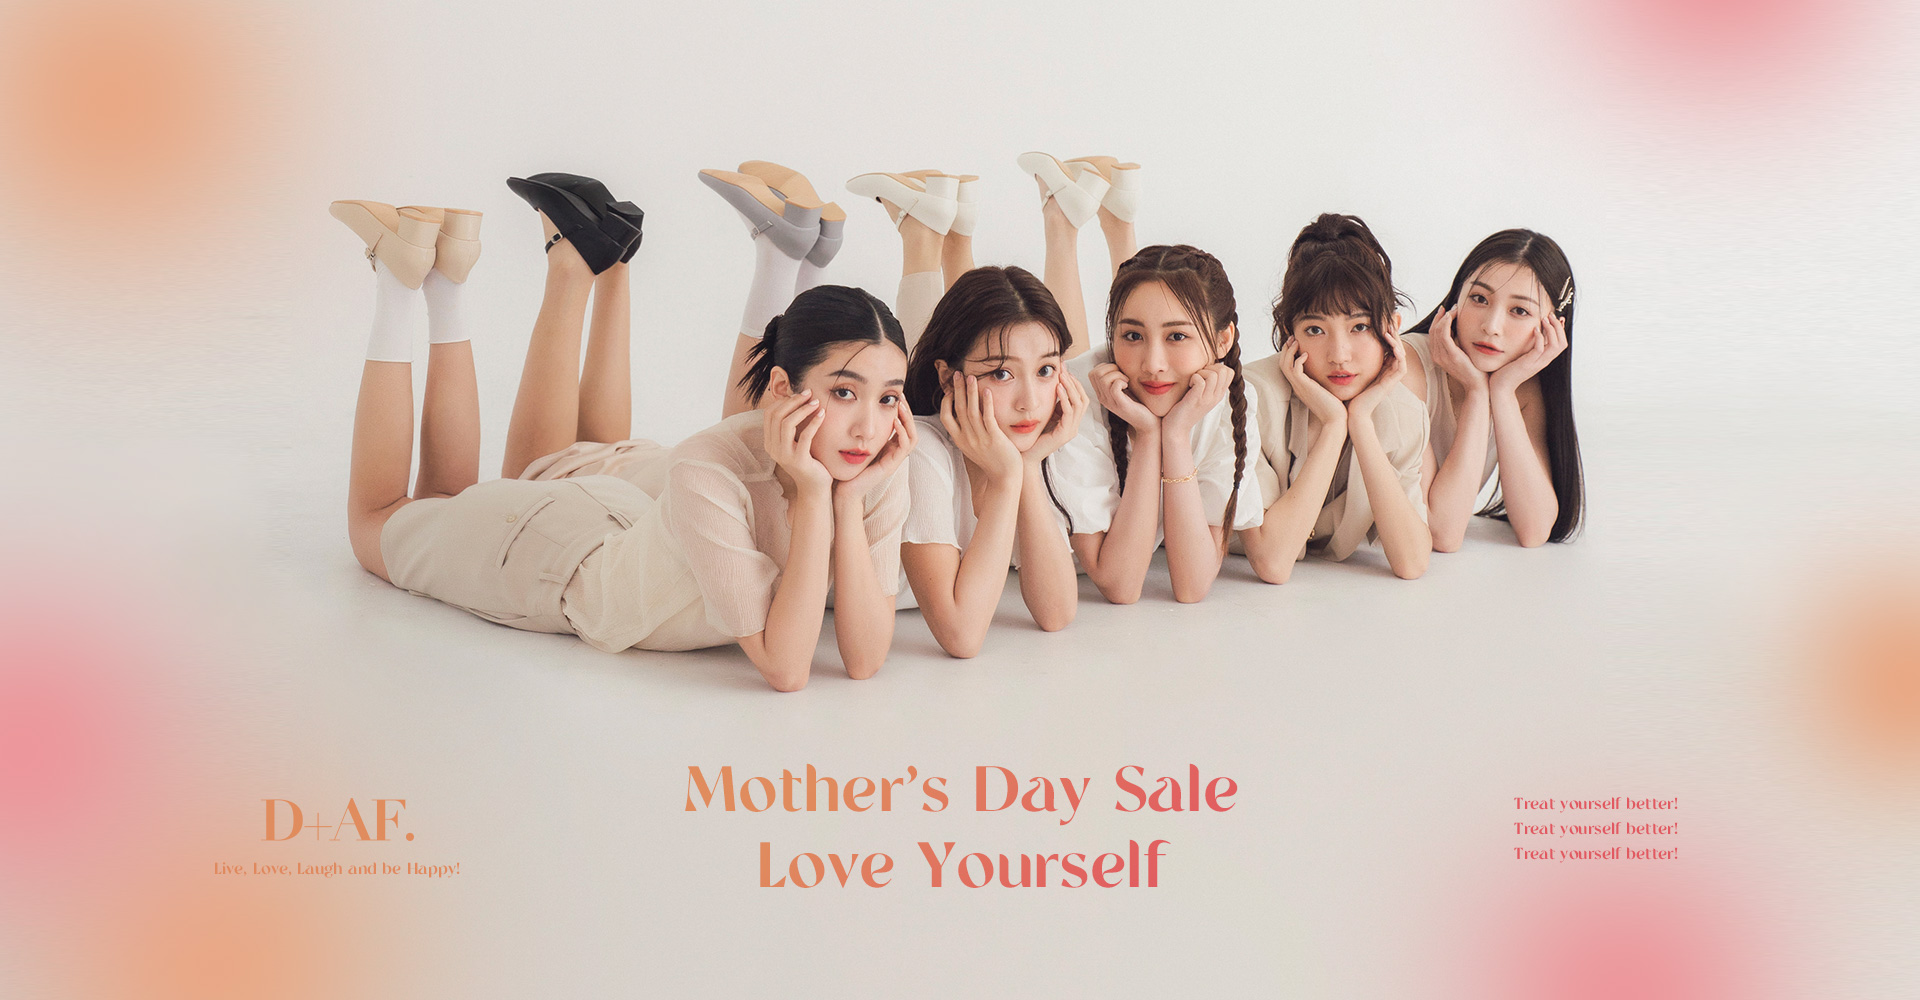 D+AF mother’s day sale 5/8(一)開搶!